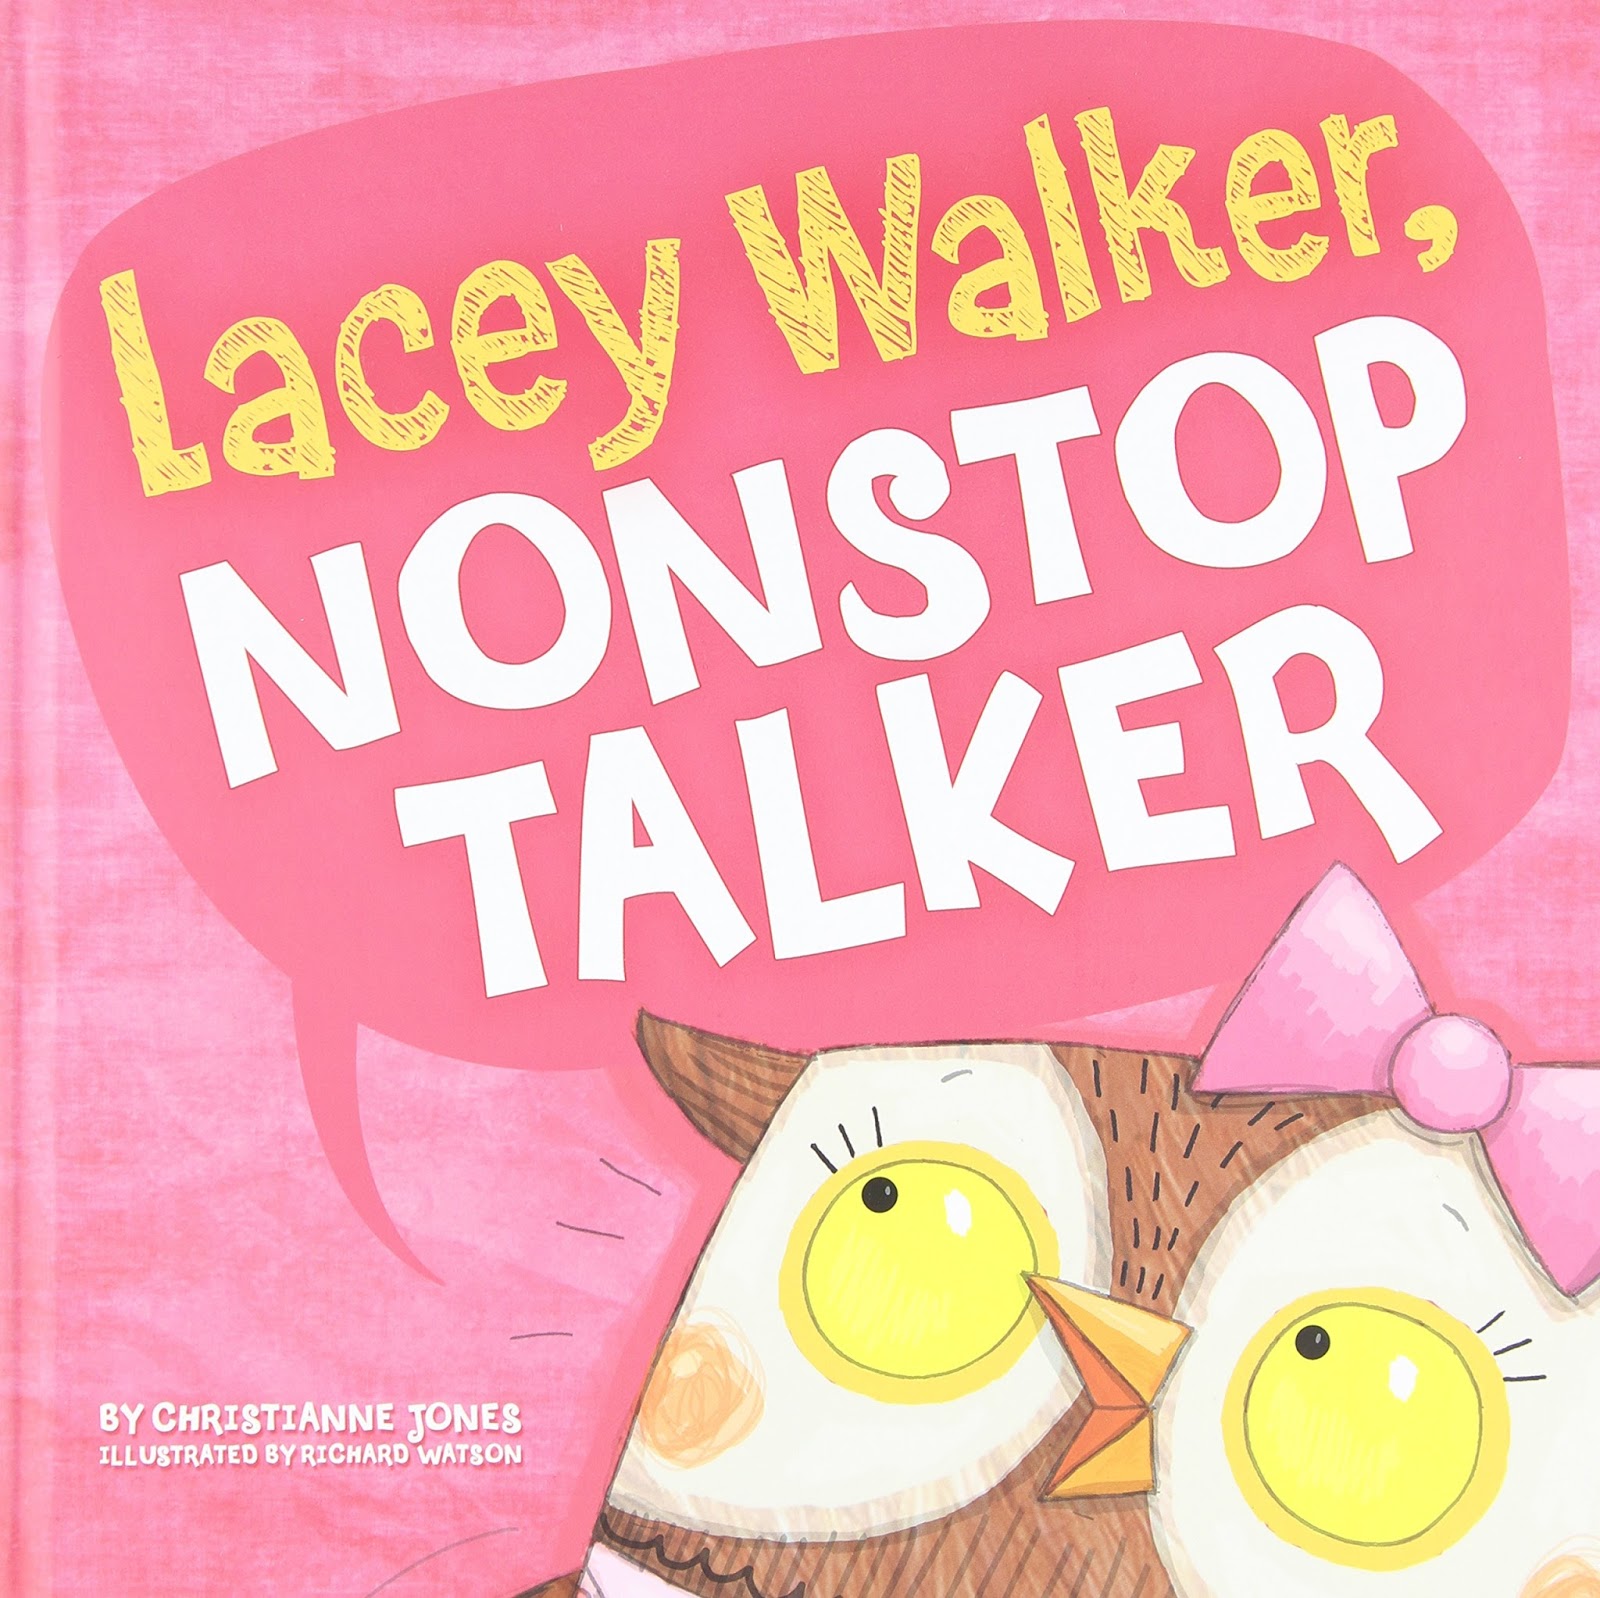 Image result for lacey walker nonstop talker